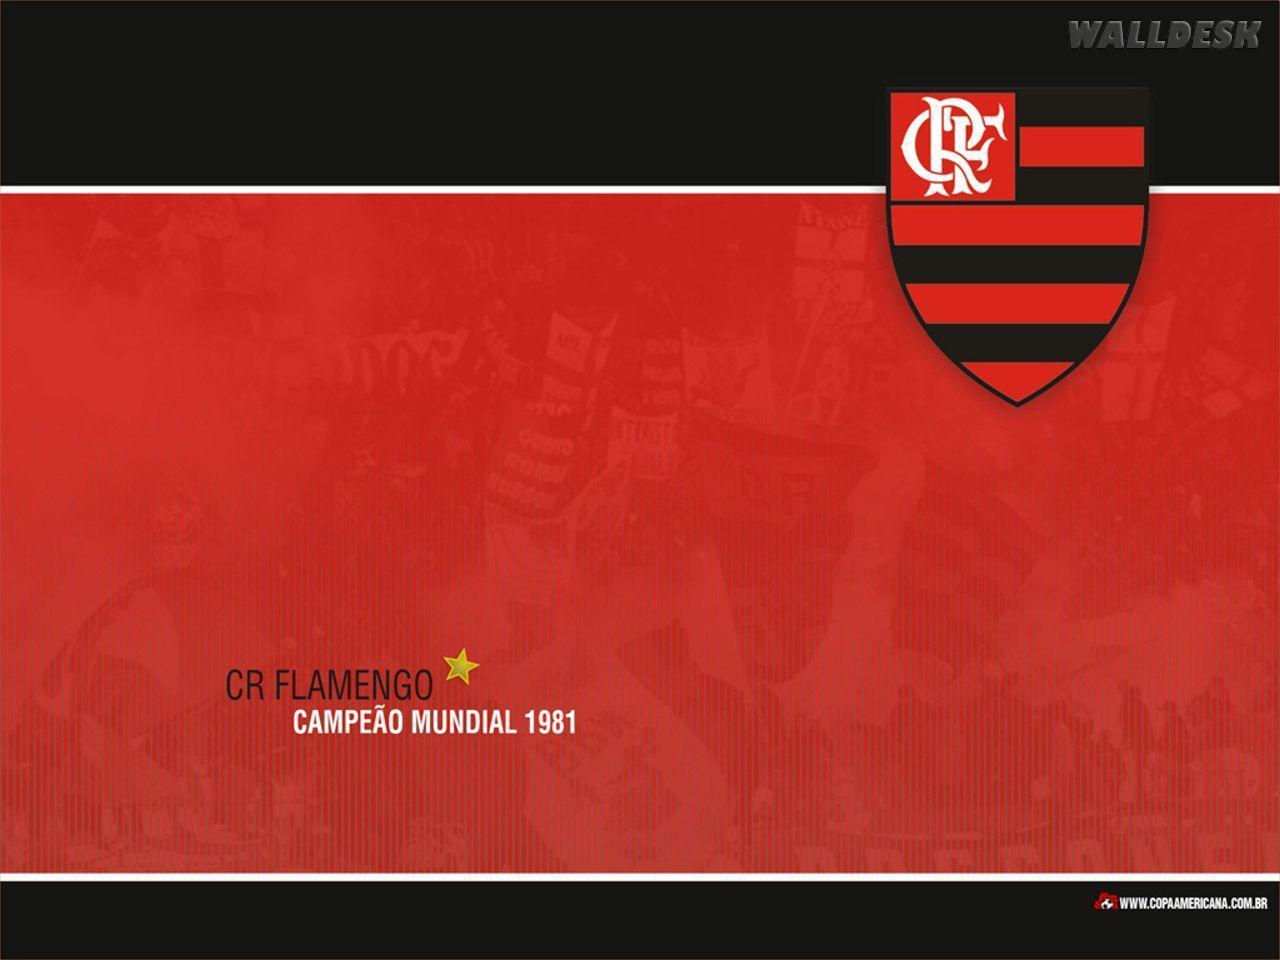 Papel de parede Flamengo fotos grátis. Papéis de parede, fotos